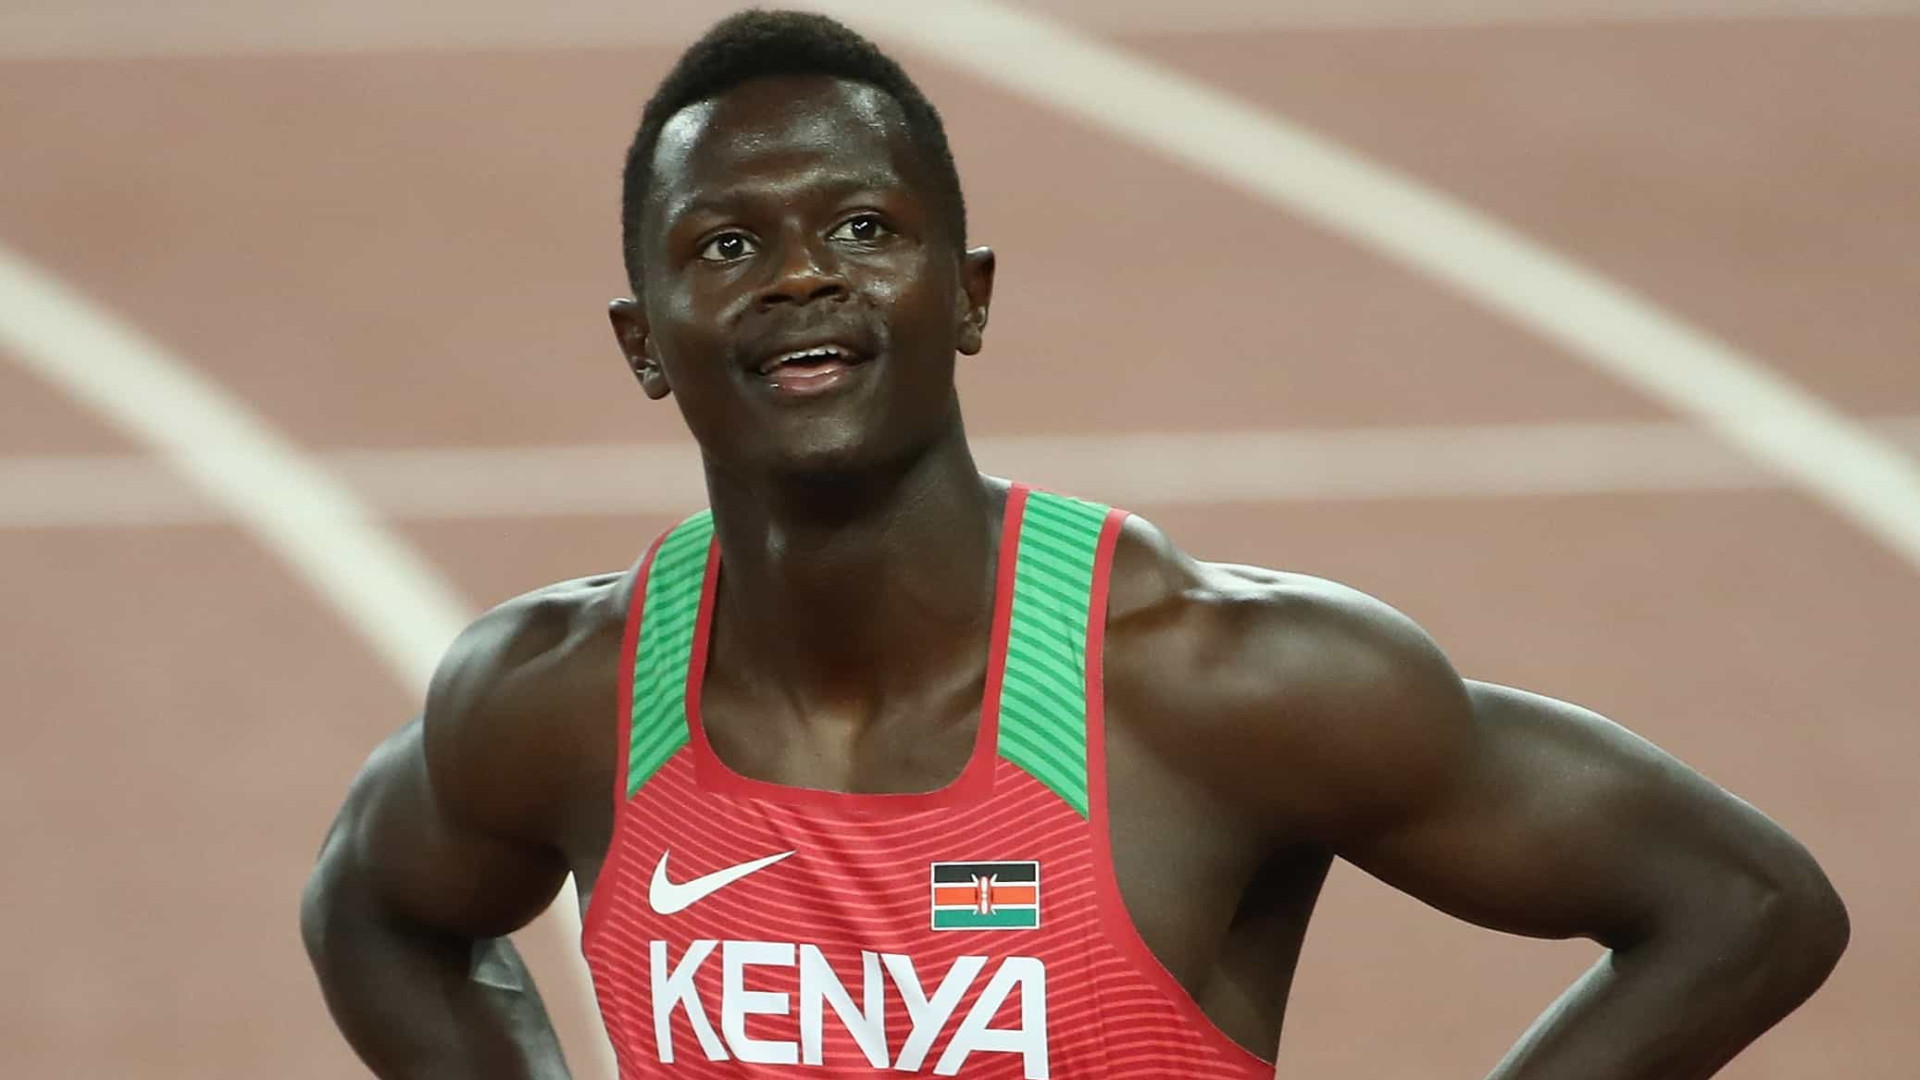 Atleta queniano é 1º caso de doping nos Jogos de Tóquio-2020